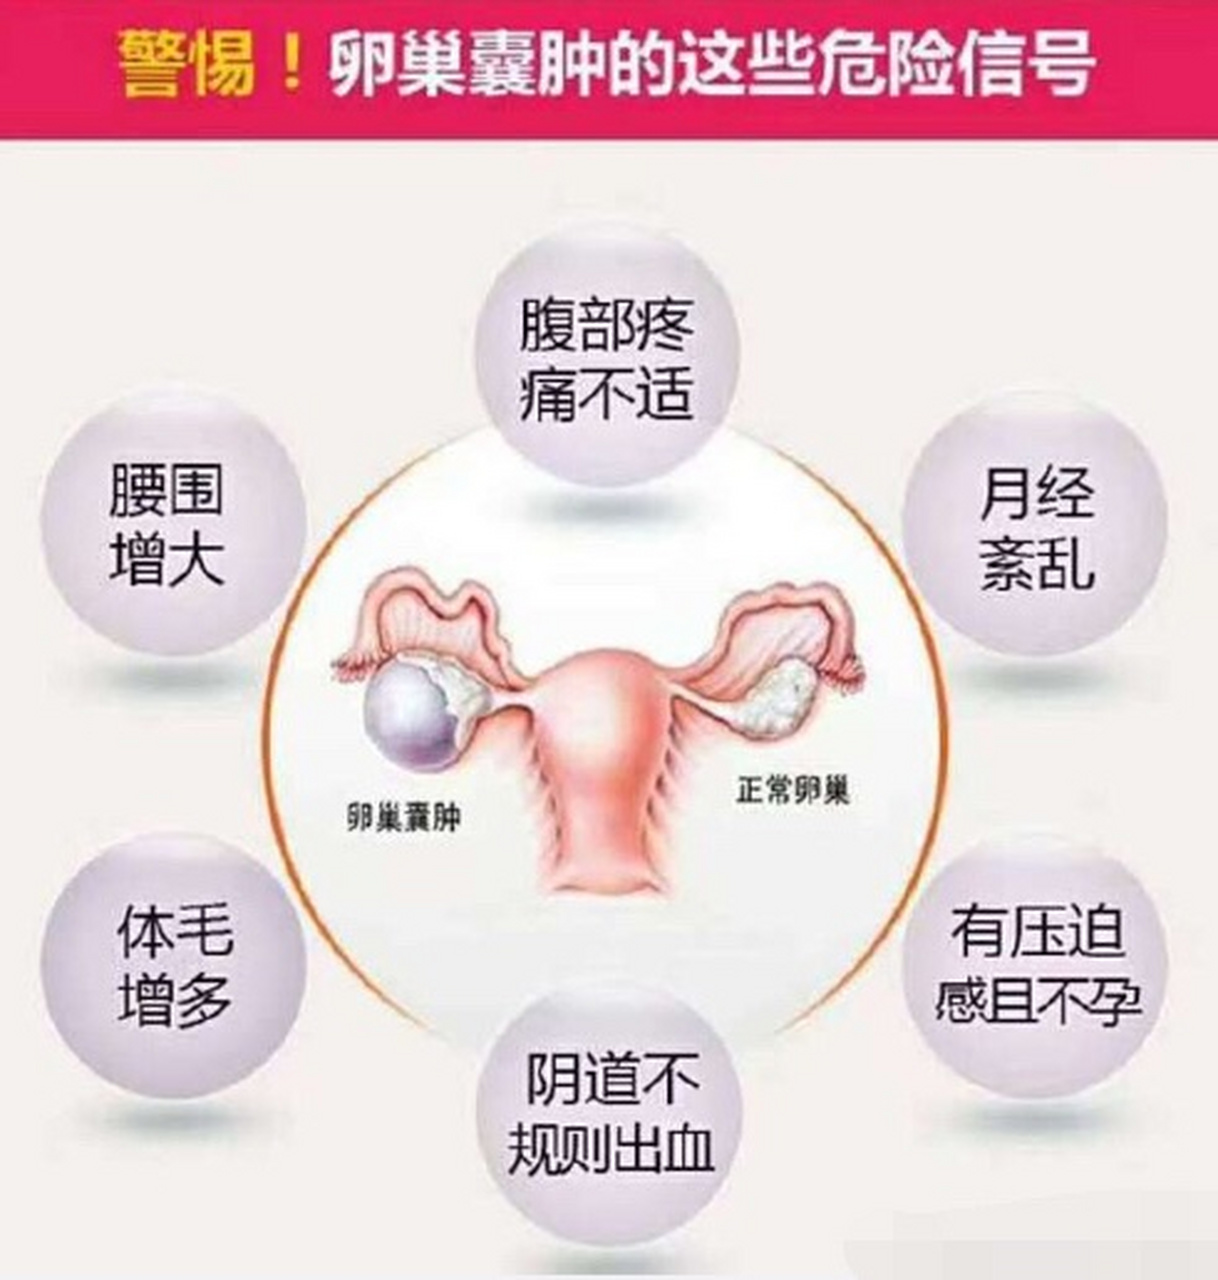 卵巢囊肿大多是由于卵巢产生过多雄激素,而雄激素的过量产生,是由于